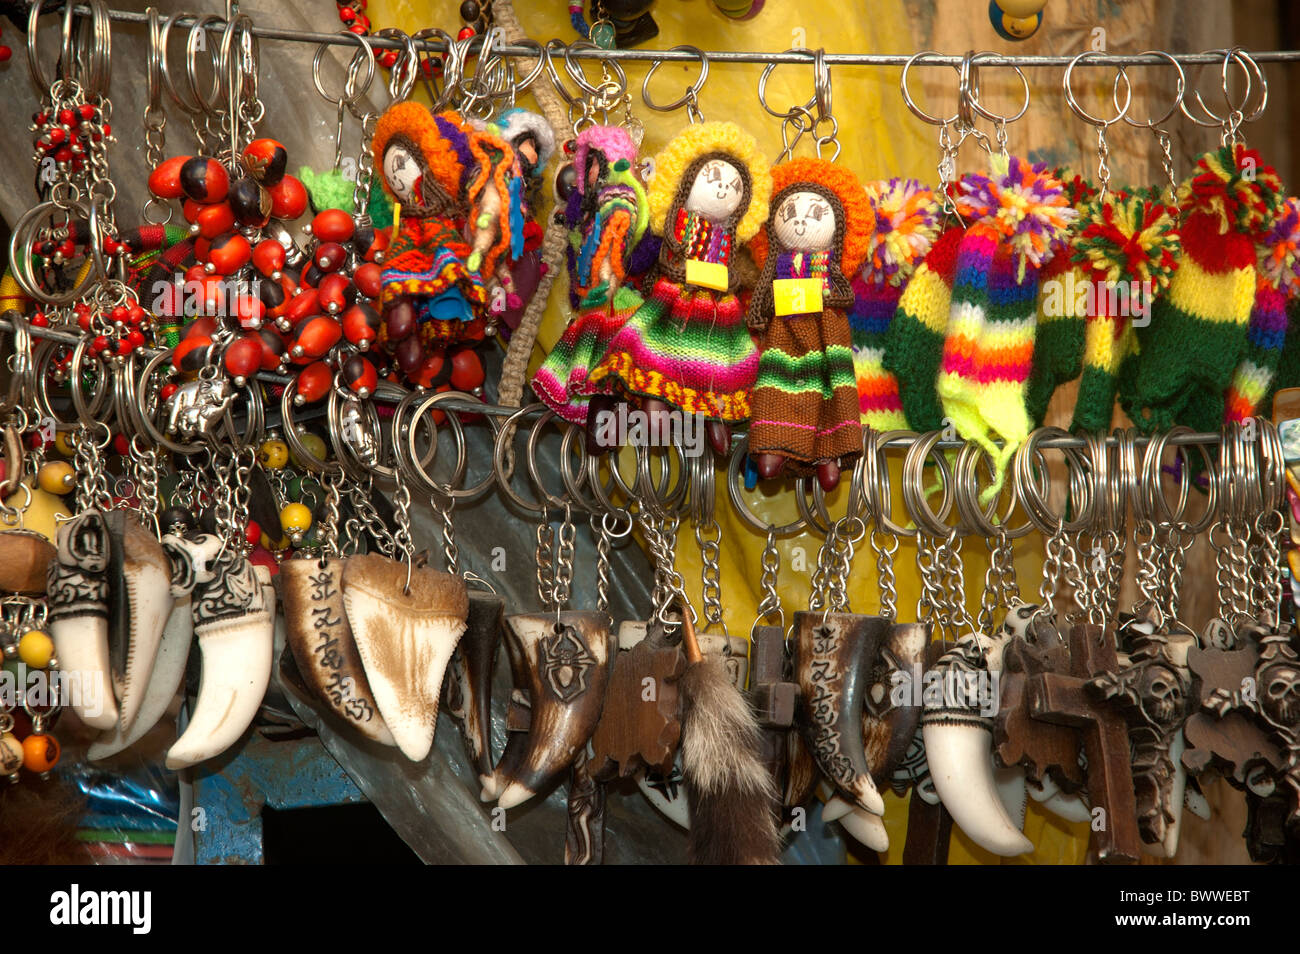 Toutes sortes d'articles à vendre comme talisman, amulettes, magie, rituels et de la médecine traditionnelle dans le marché des sorcières, La Paz, Bolivie. Banque D'Images